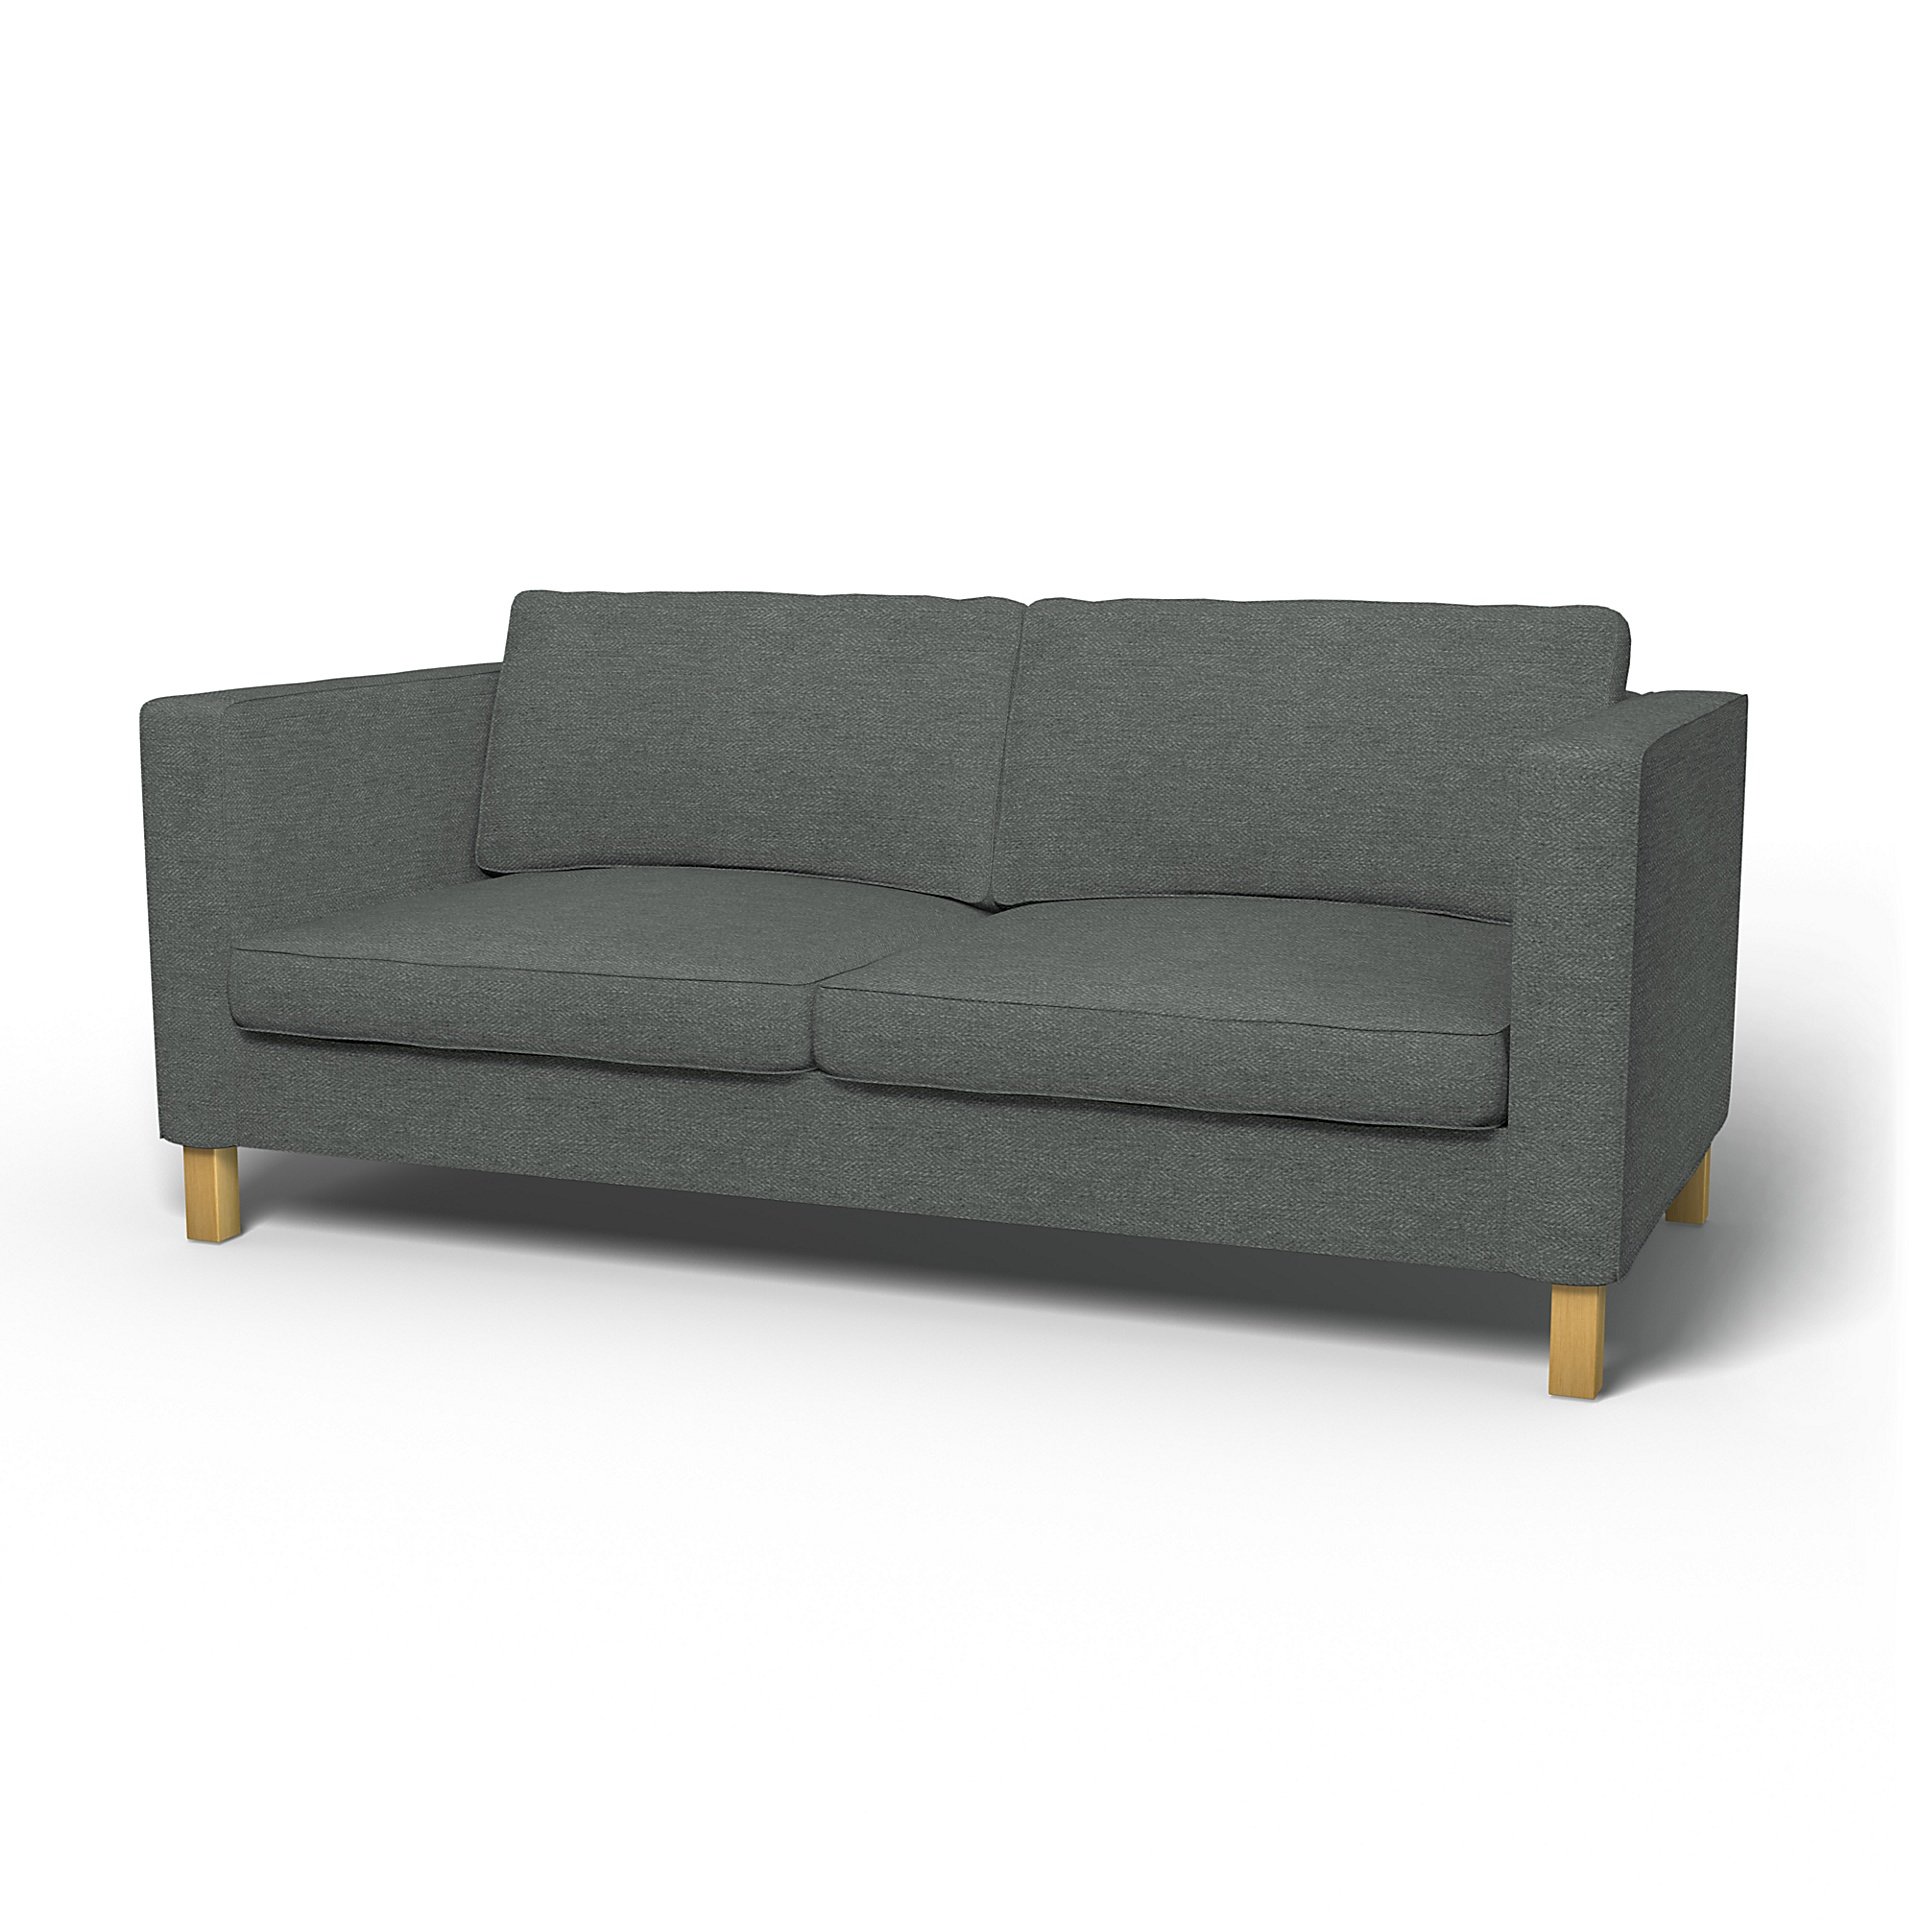 IKEA - Karlanda Sofa Bed Cover, Laurel, Boucle & Texture - Bemz